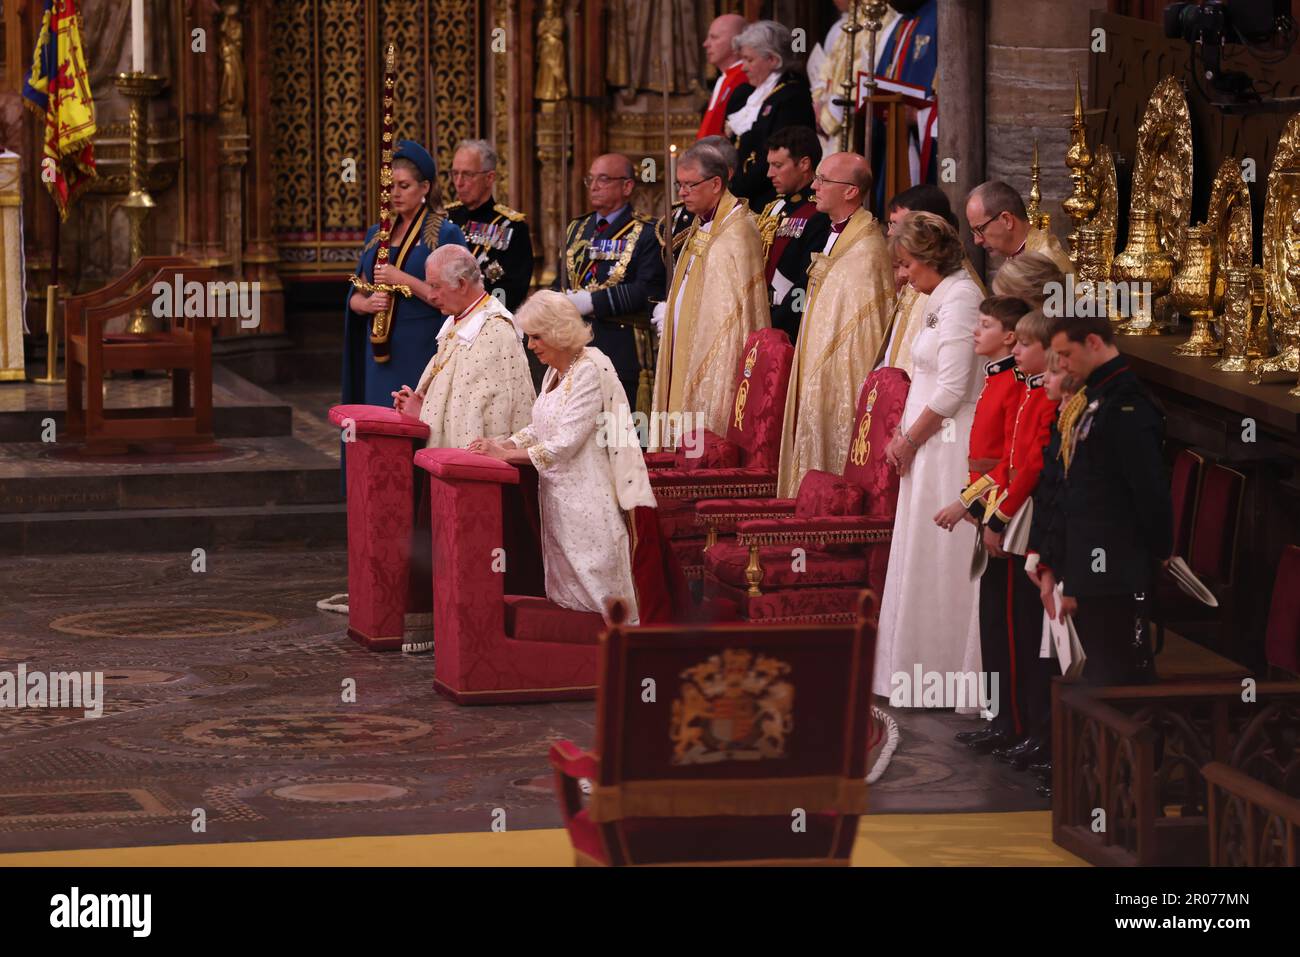 Le roi Charles III et la reine Camilla pendant leur couronnement à l'abbaye de Westminster, Londres. Date de la photo: Samedi 6 mai 2023. Banque D'Images